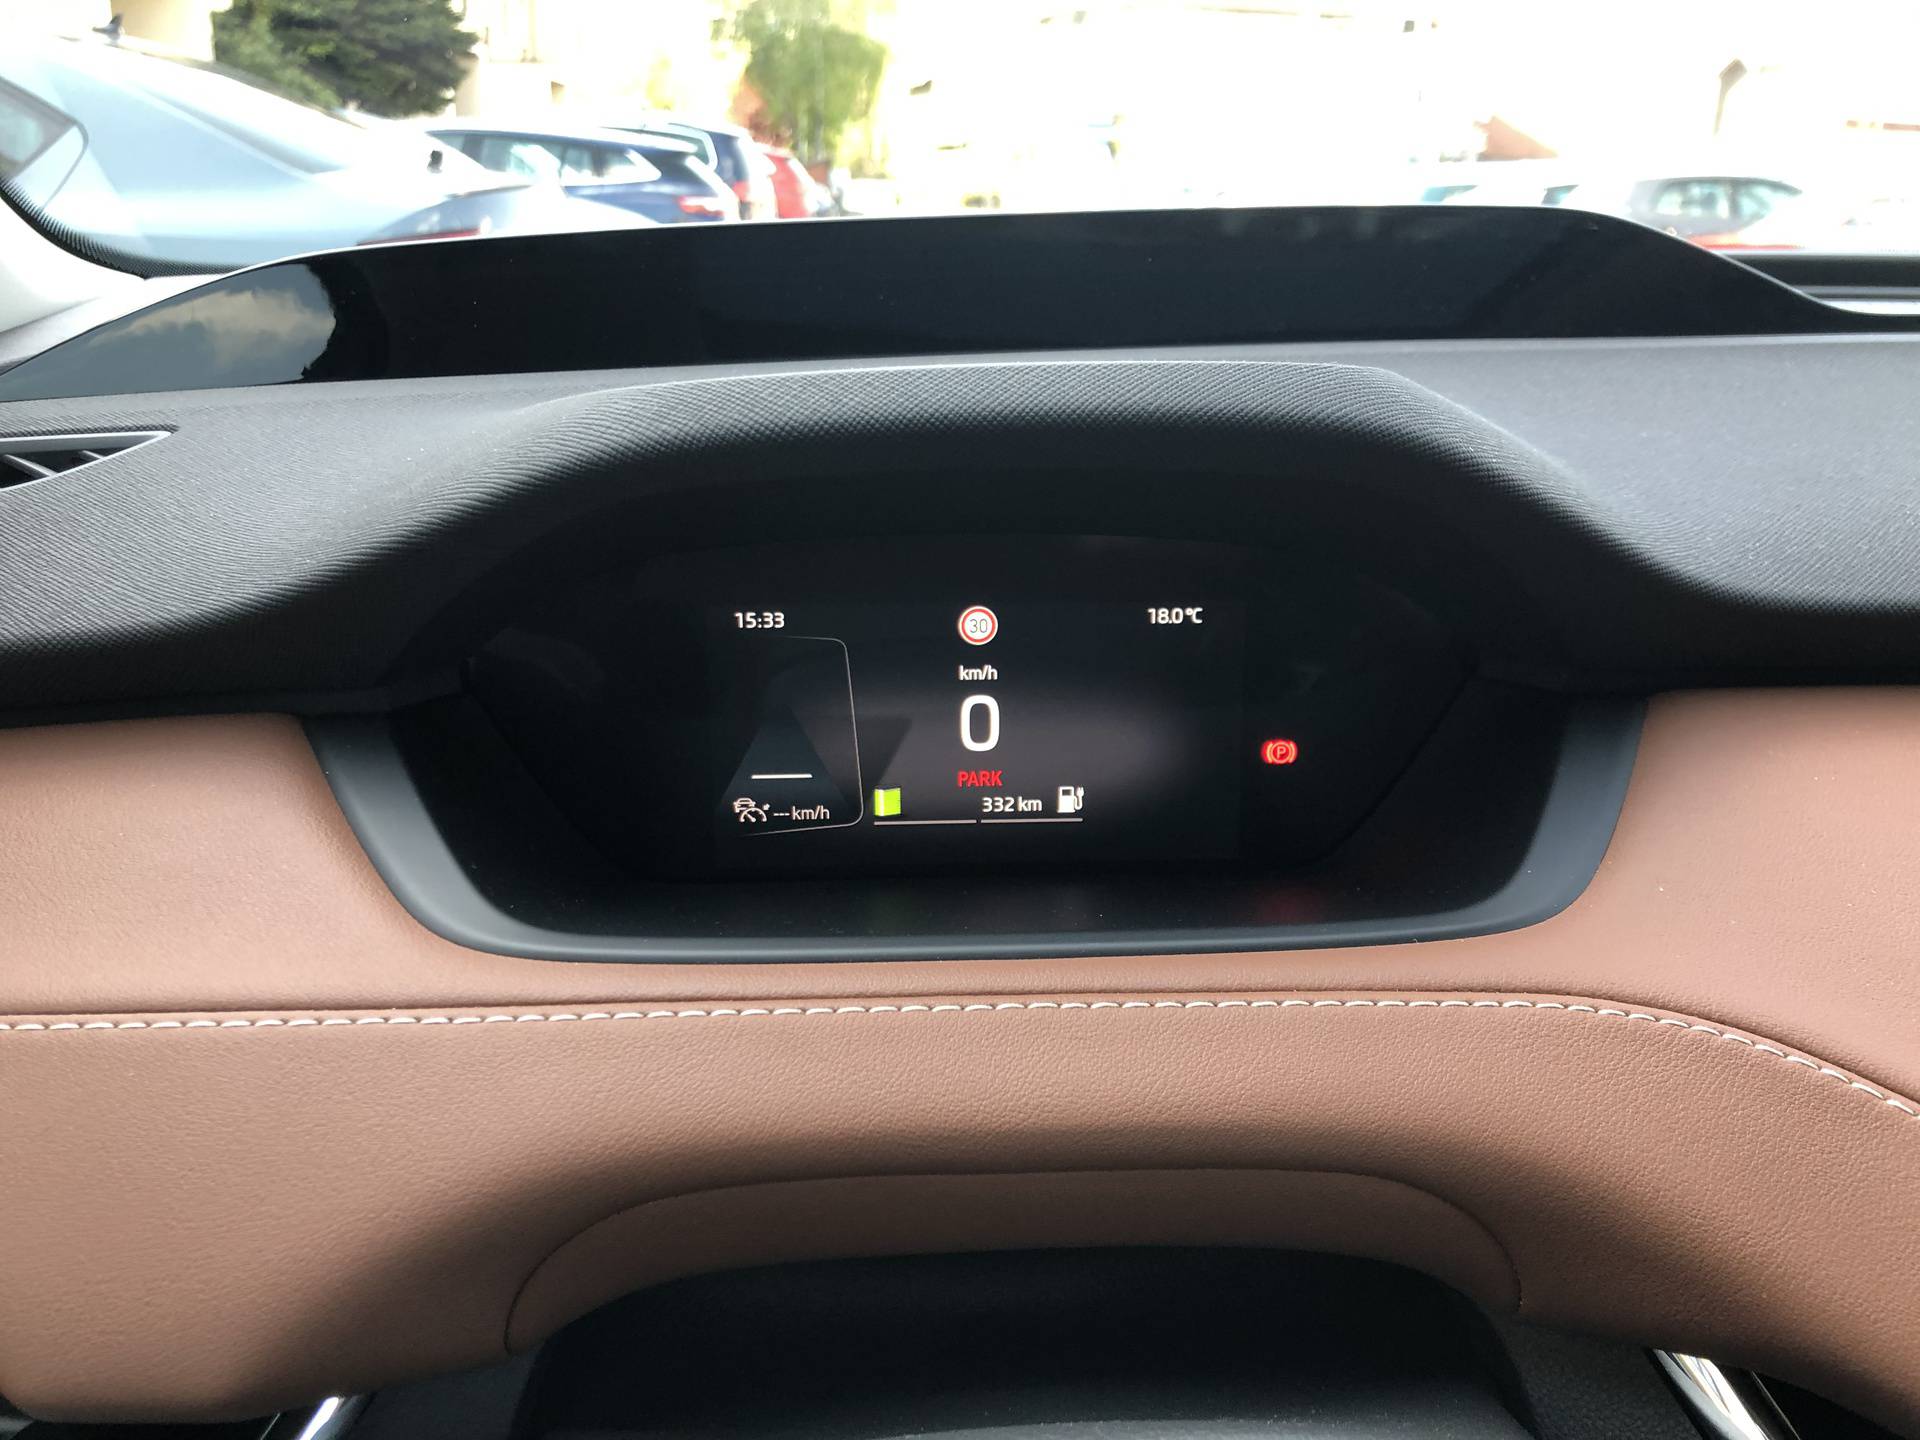 Impresivna Škoda Enyaq stigla u Hrvatsku i već smo je vozili